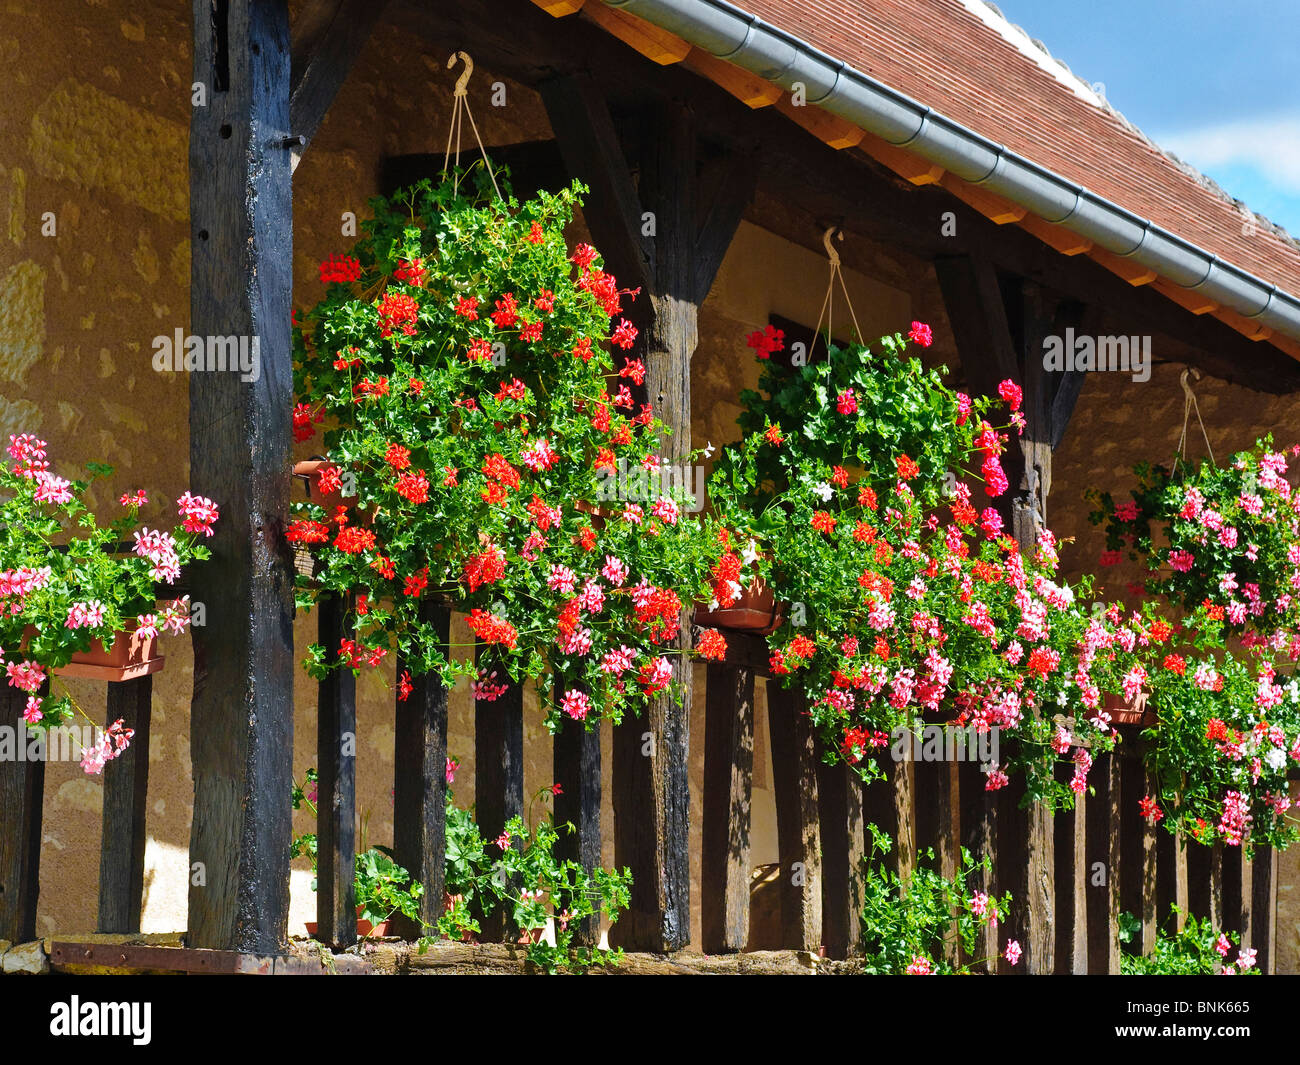 Paniers suspendus et des jardinières sur le balcon en bois de la maison en pierre - France. Banque D'Images